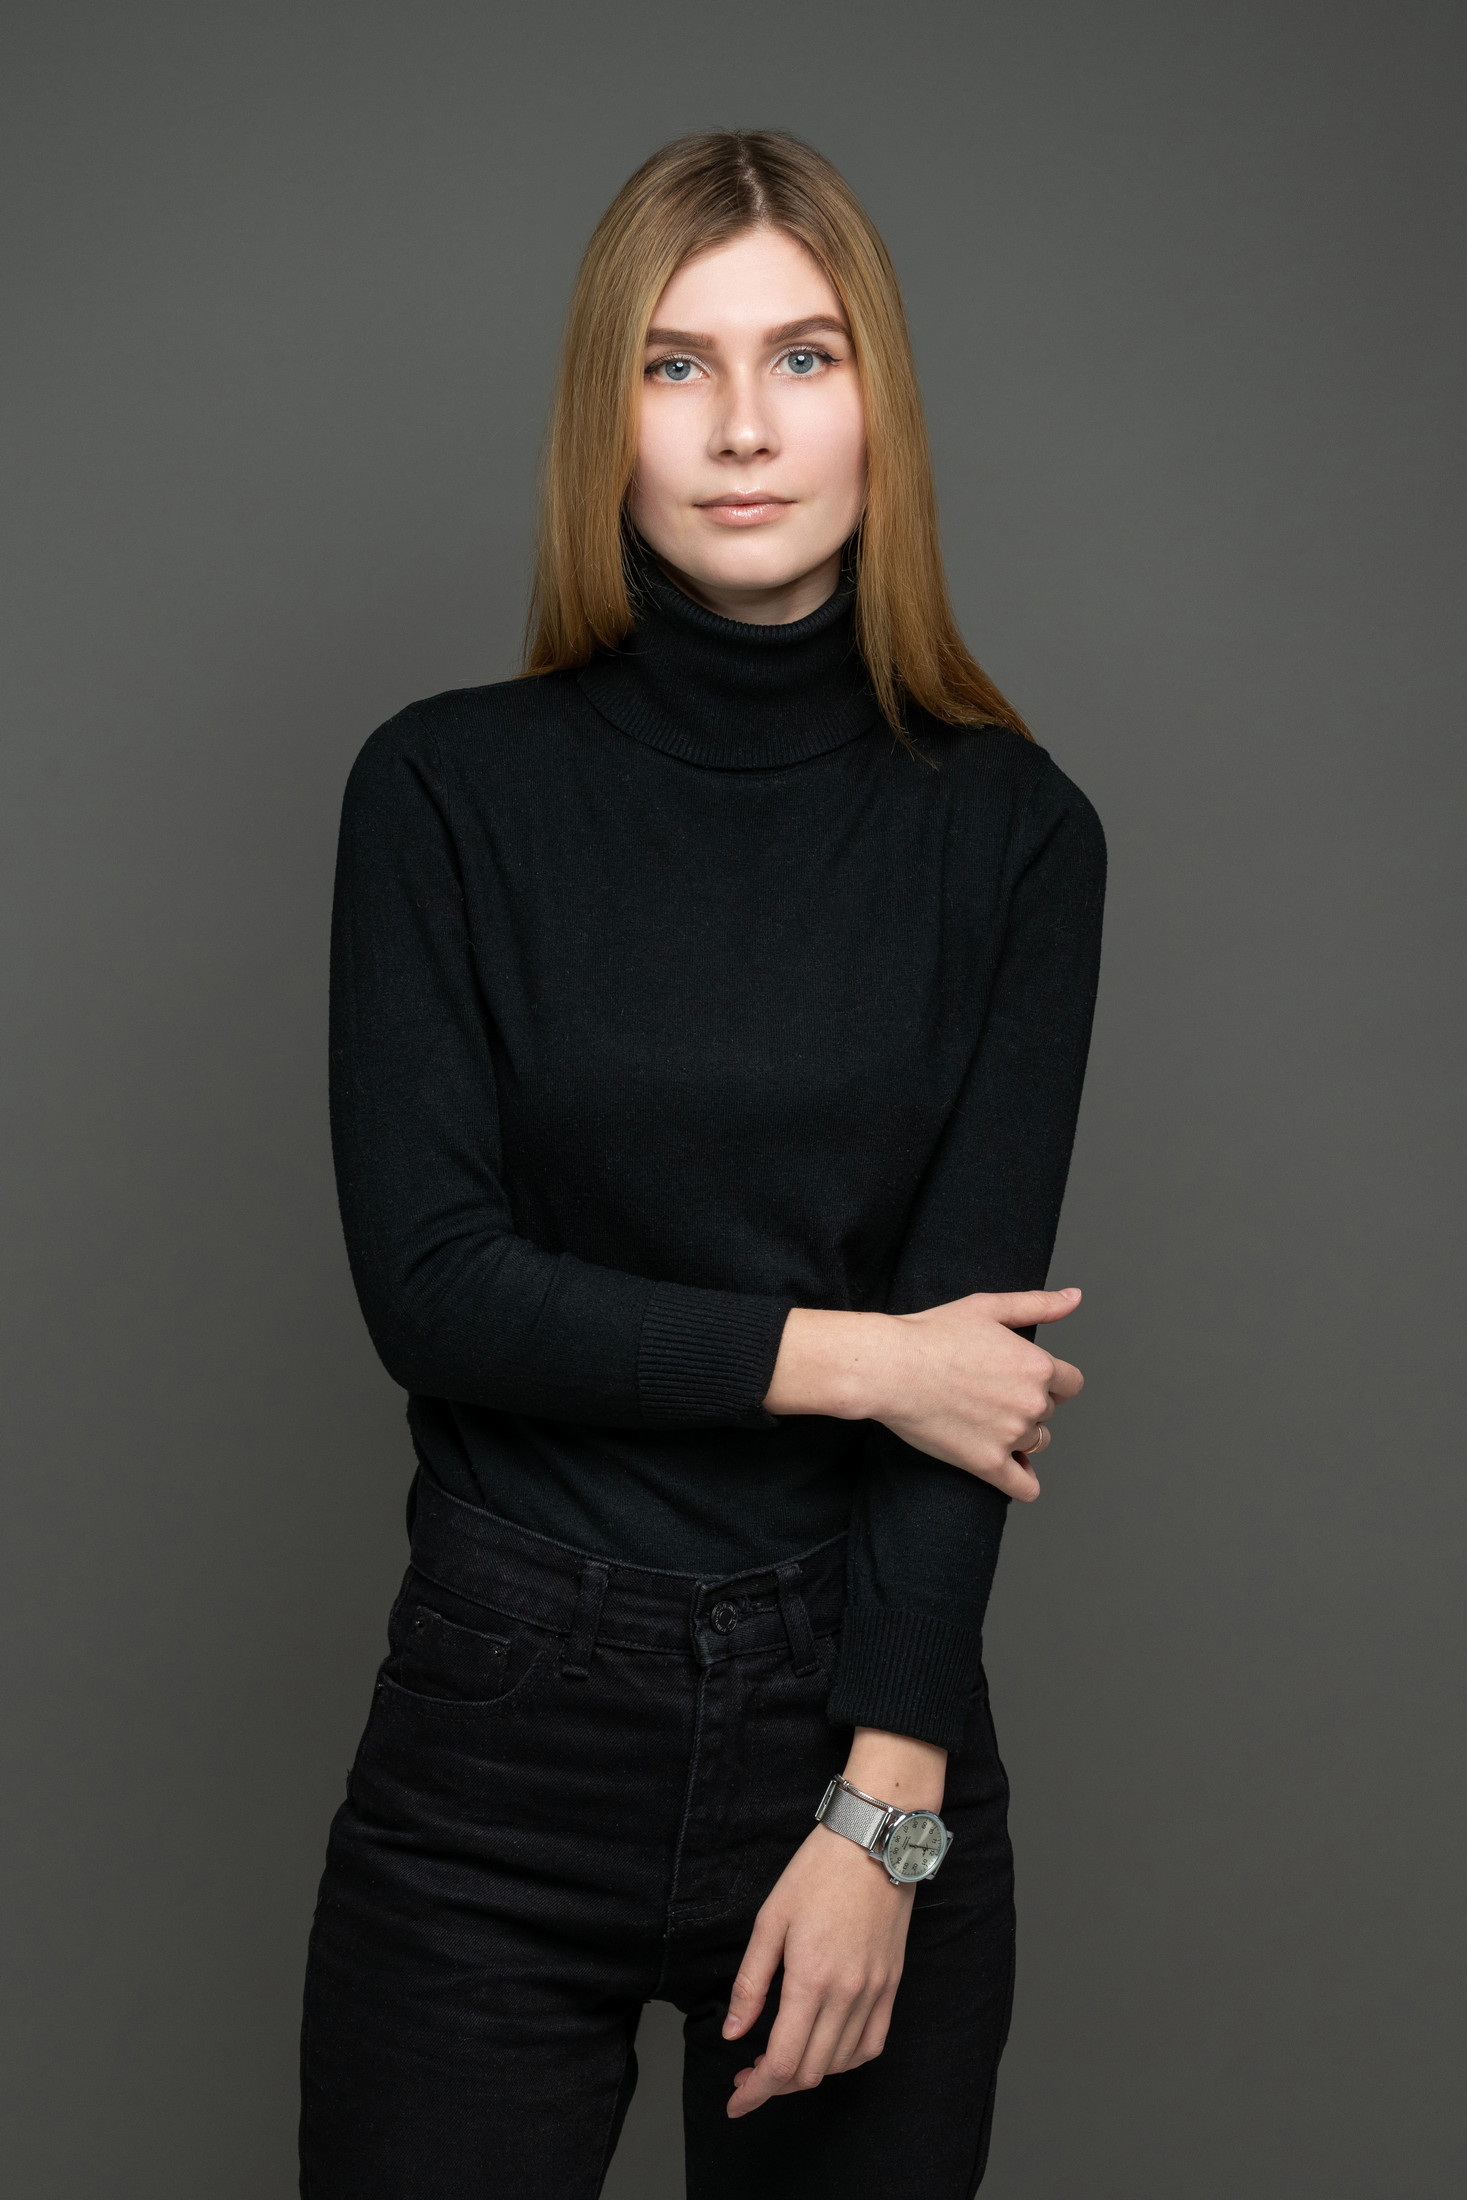 Tatiana Szczerbina